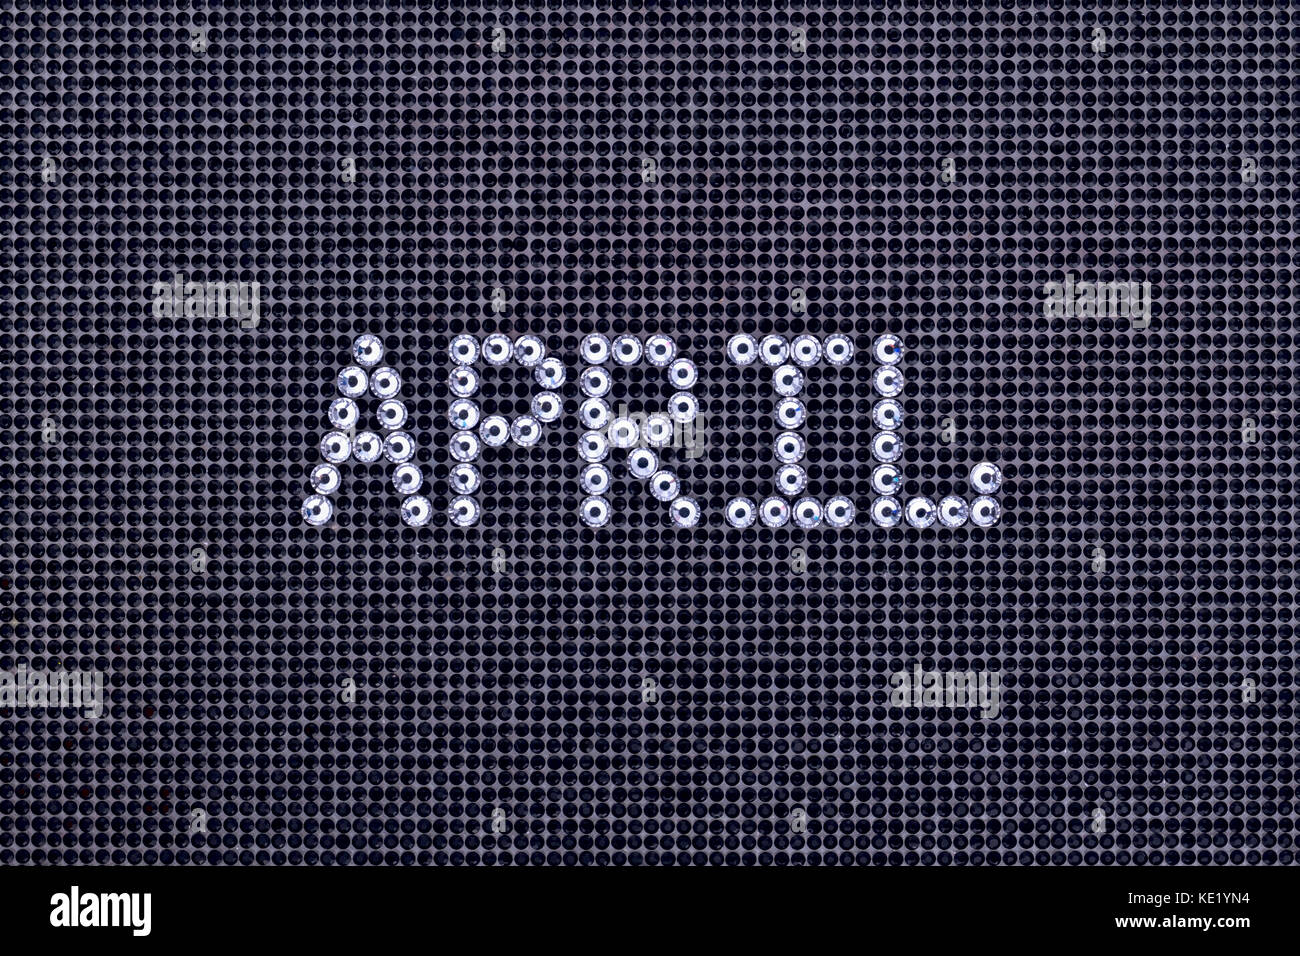 Mese aprile è realizzato strass colore cristallo su una tela nera sullo sfondo Foto Stock